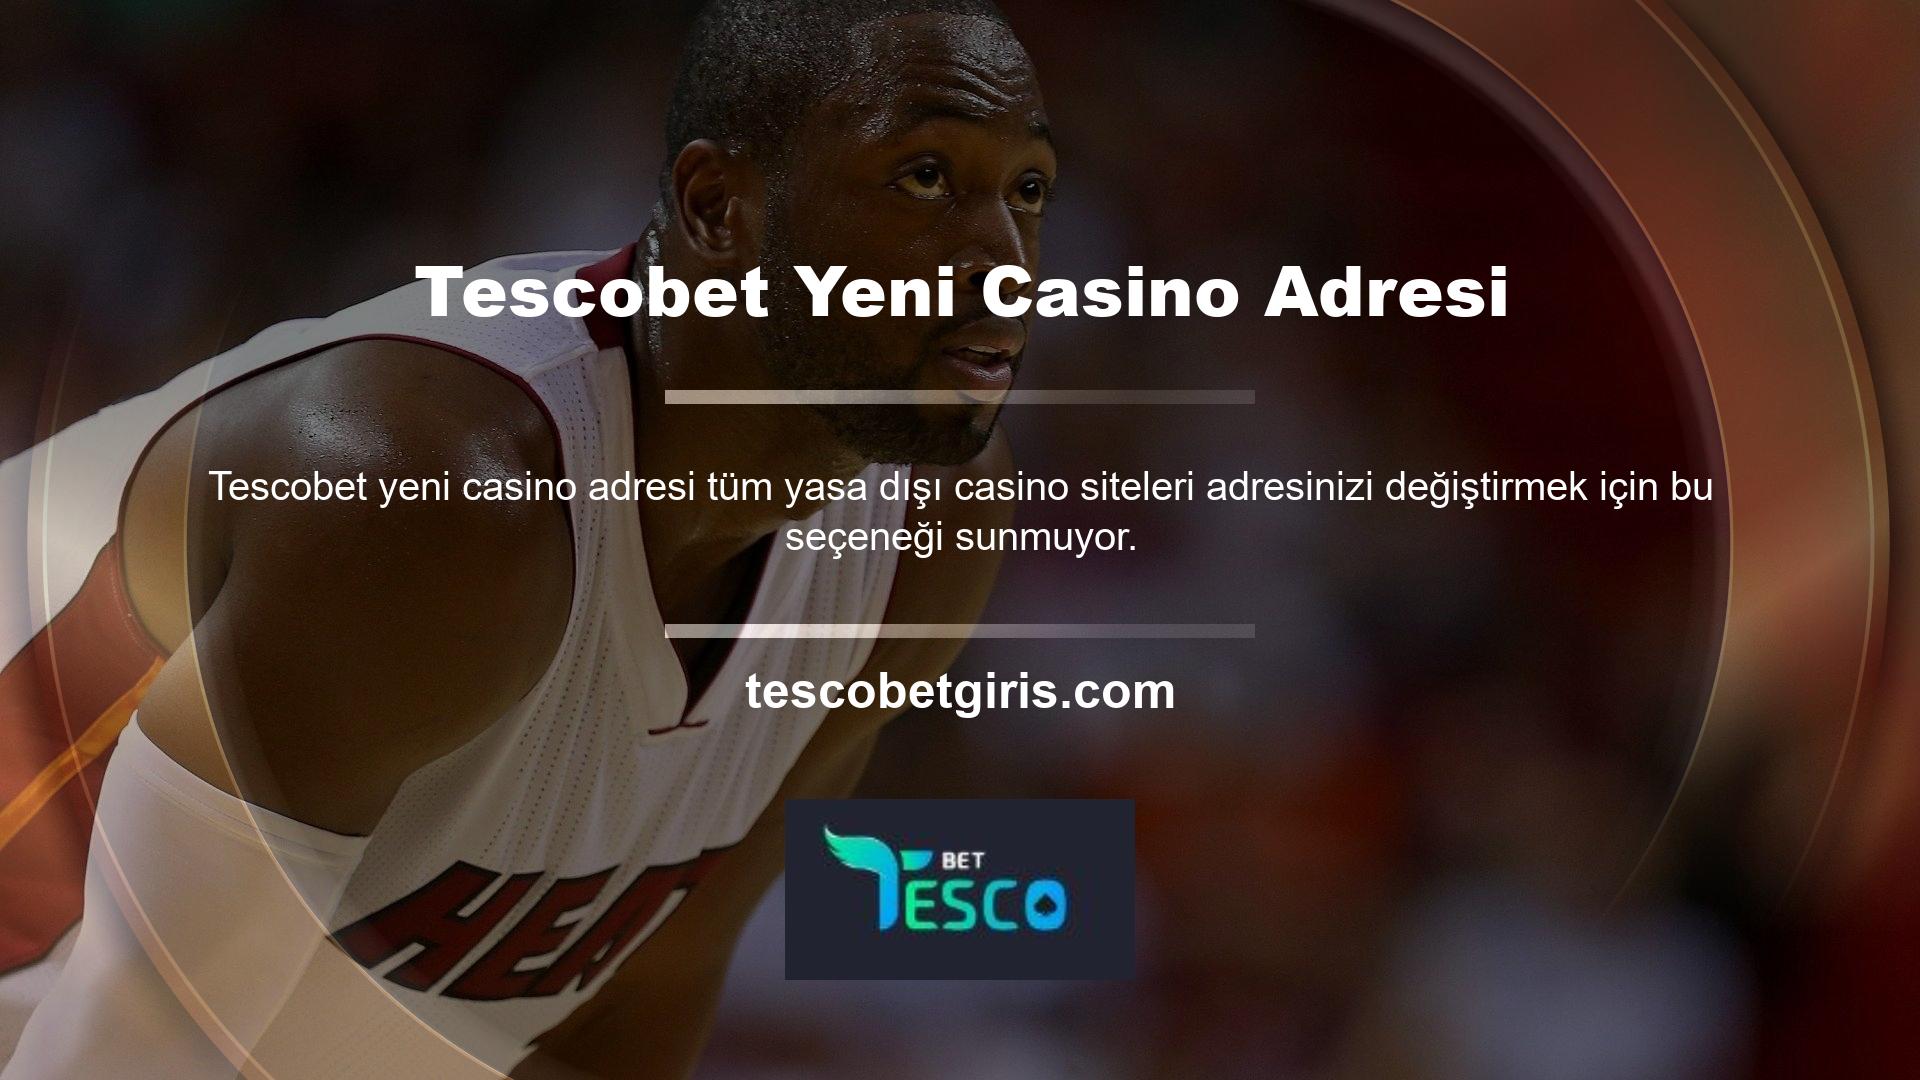 Yeni Tescobet web sitesi yeni ev adresinizi değiştirmenize yardımcı olacaktır